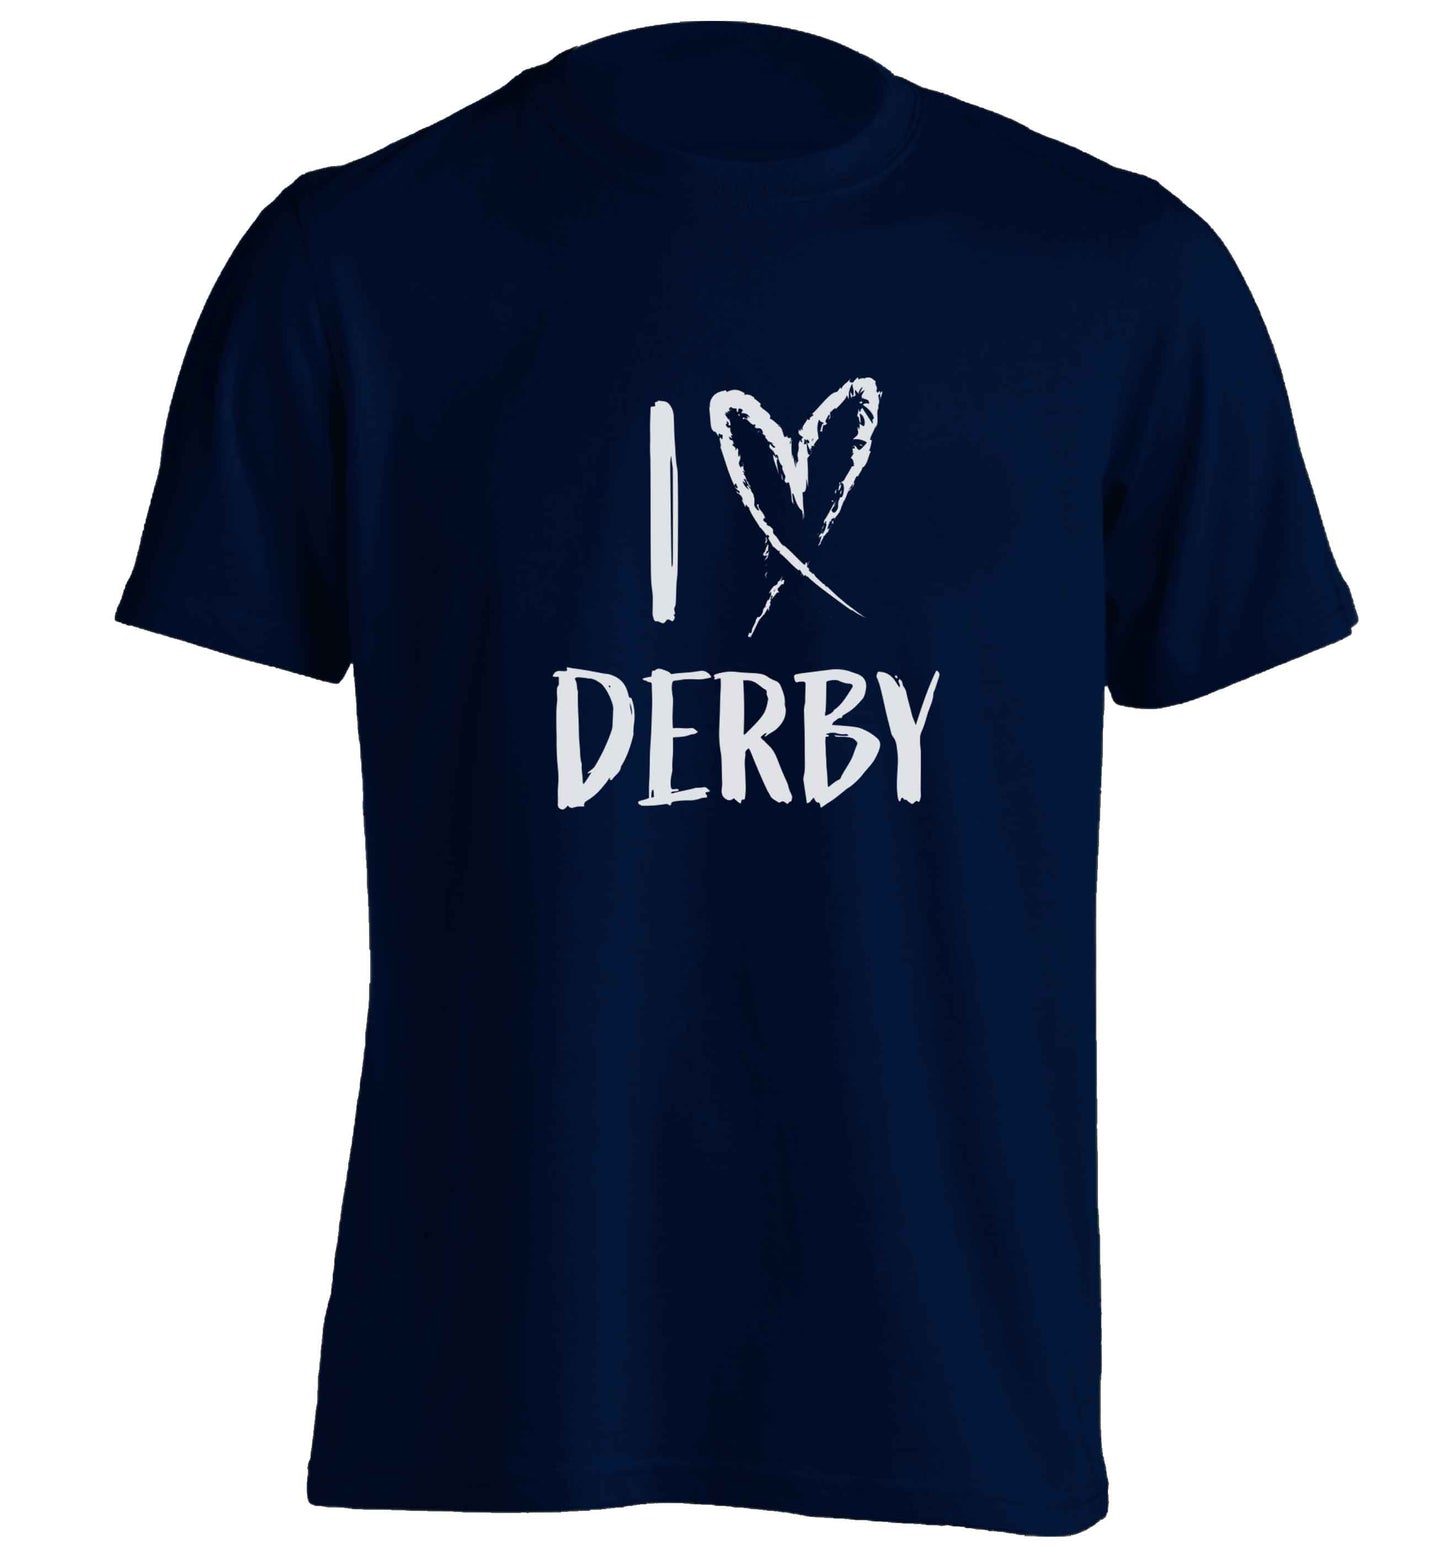 I love Derby adults unisex navy Tshirt 2XL